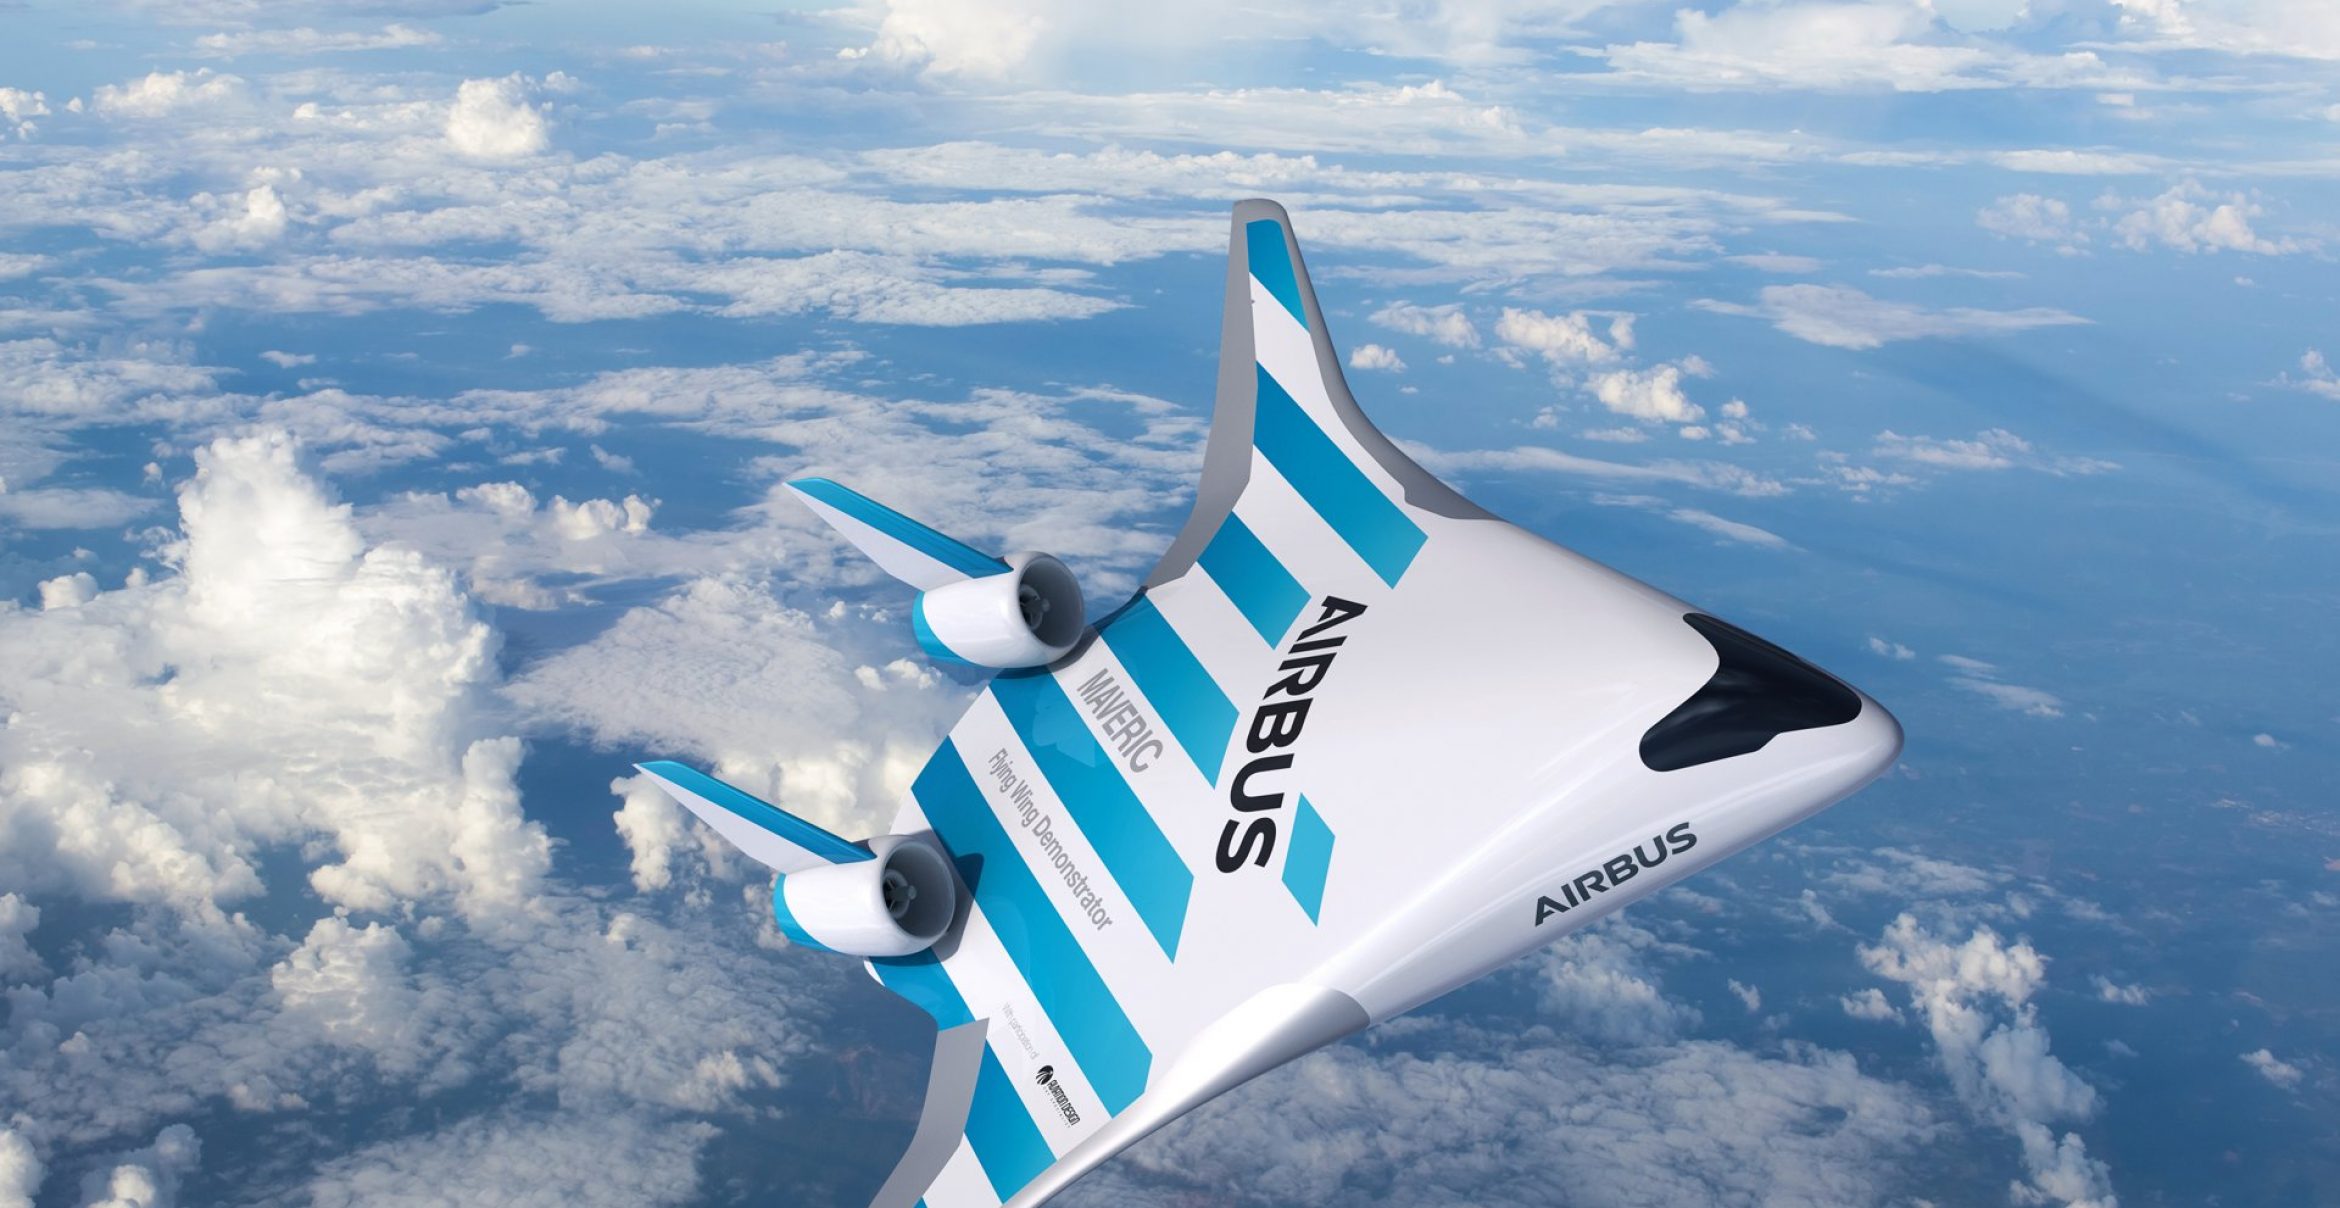 Airbus stellt neues Flugzeug vor, das wie ein Raumschiff aussieht